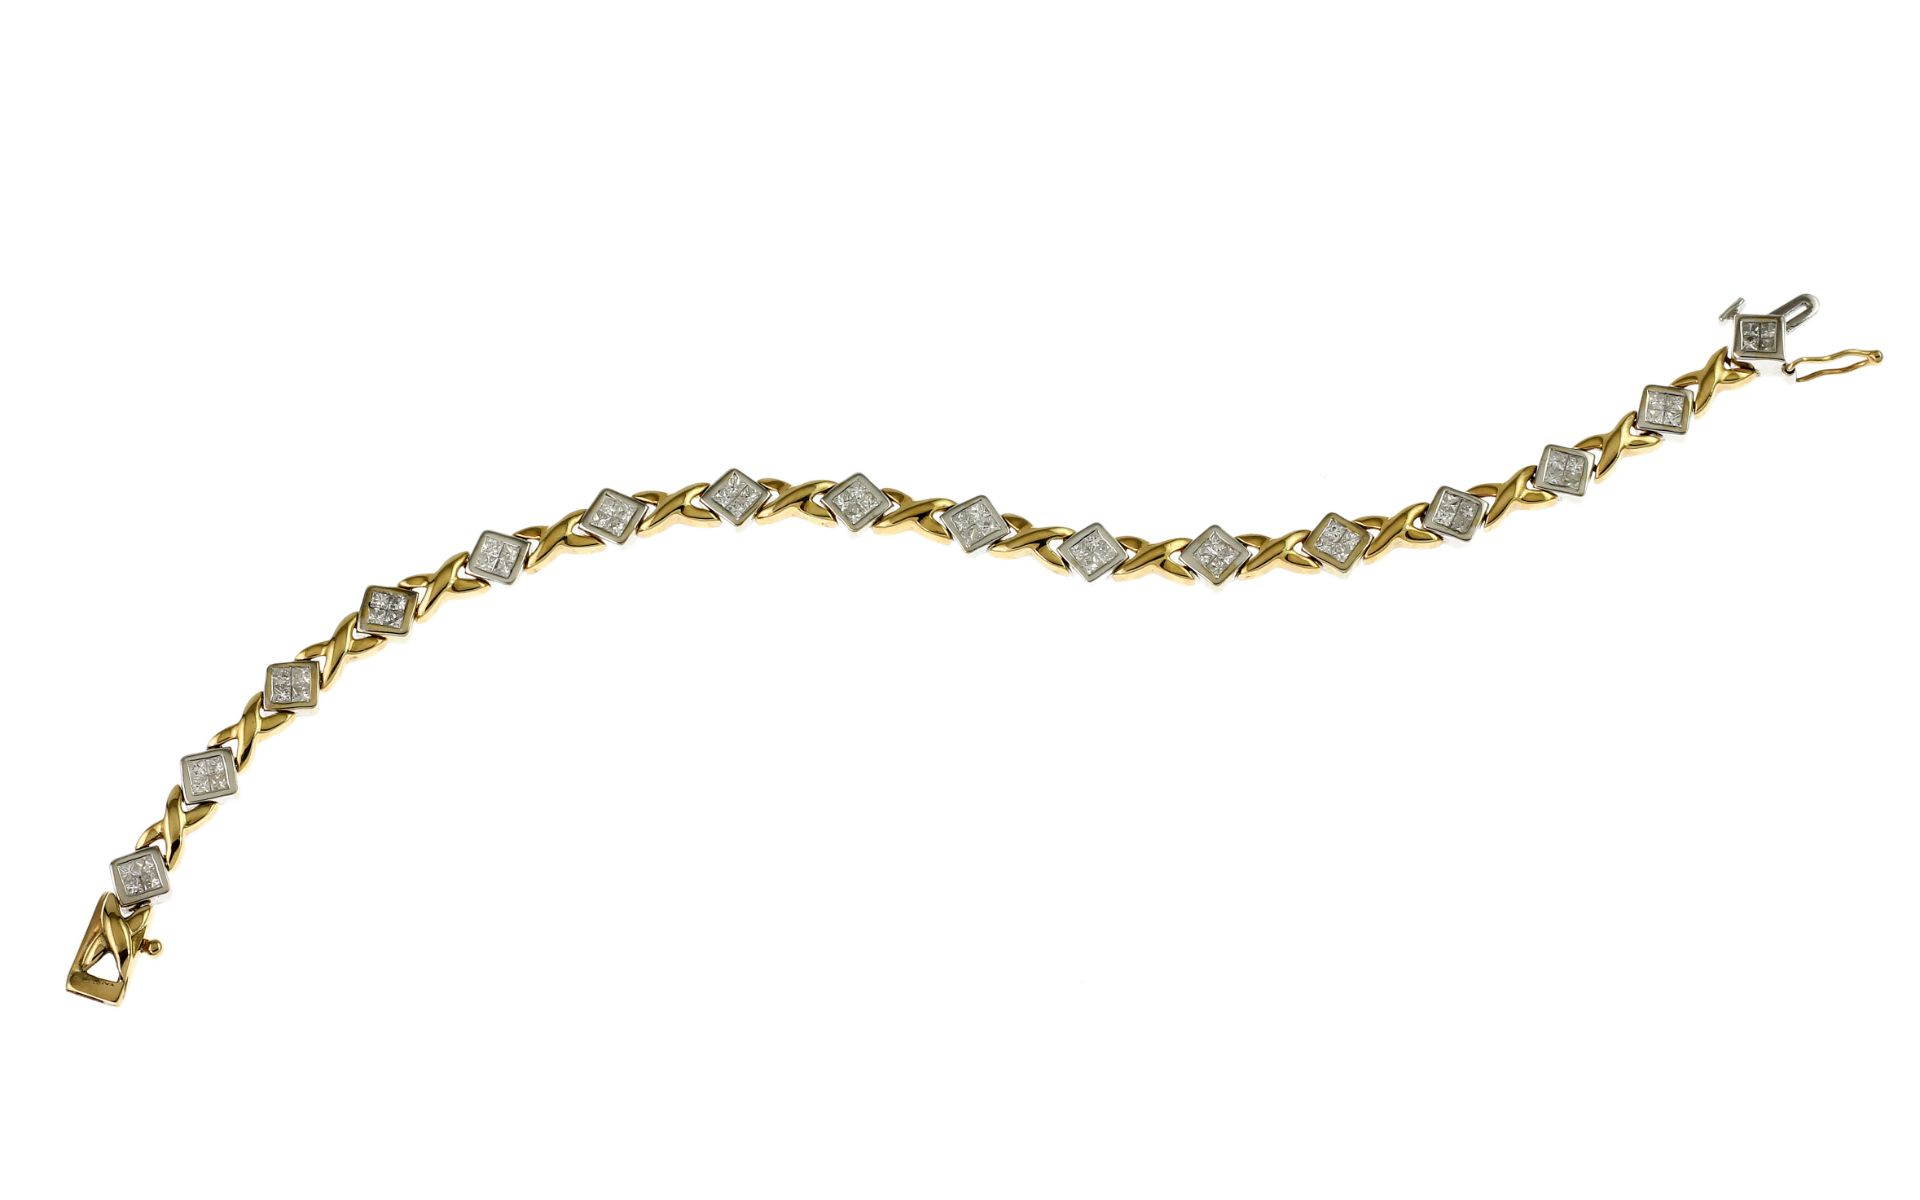 Armband 11.73 gr. 585/- Gelbgold und Weissgold mit 64 Diamanten zus. ca. 1.60 ct.. Laenge ca. 18 cm